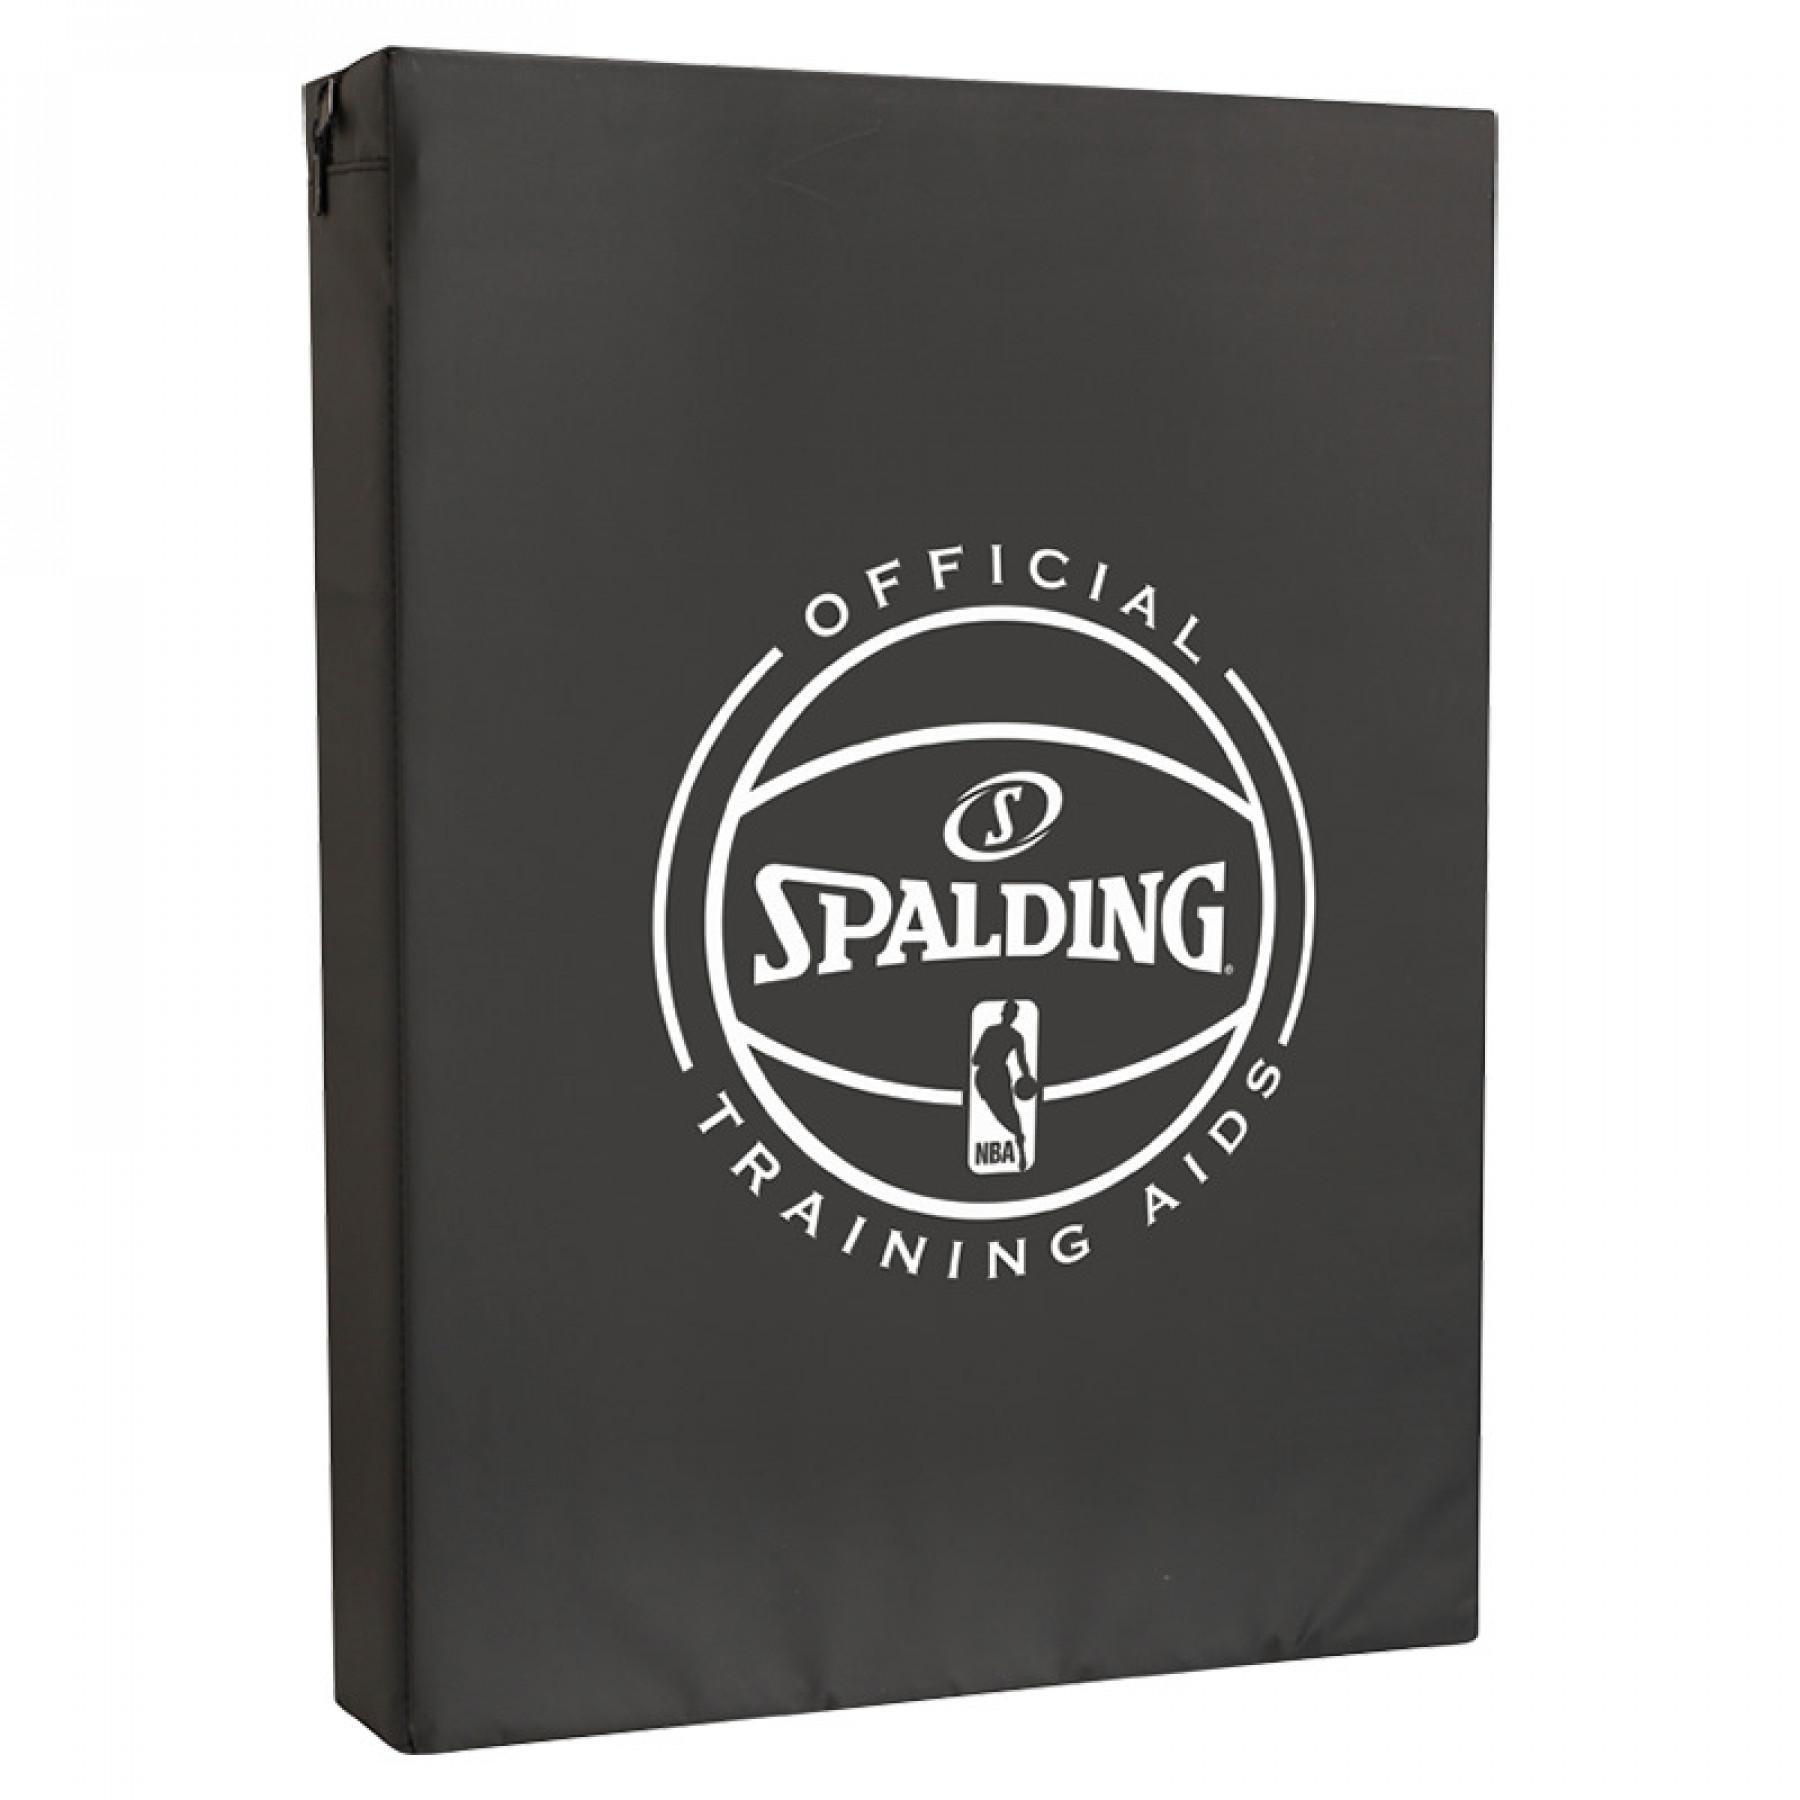 Vorstand Spalding Blocking (8483cn)